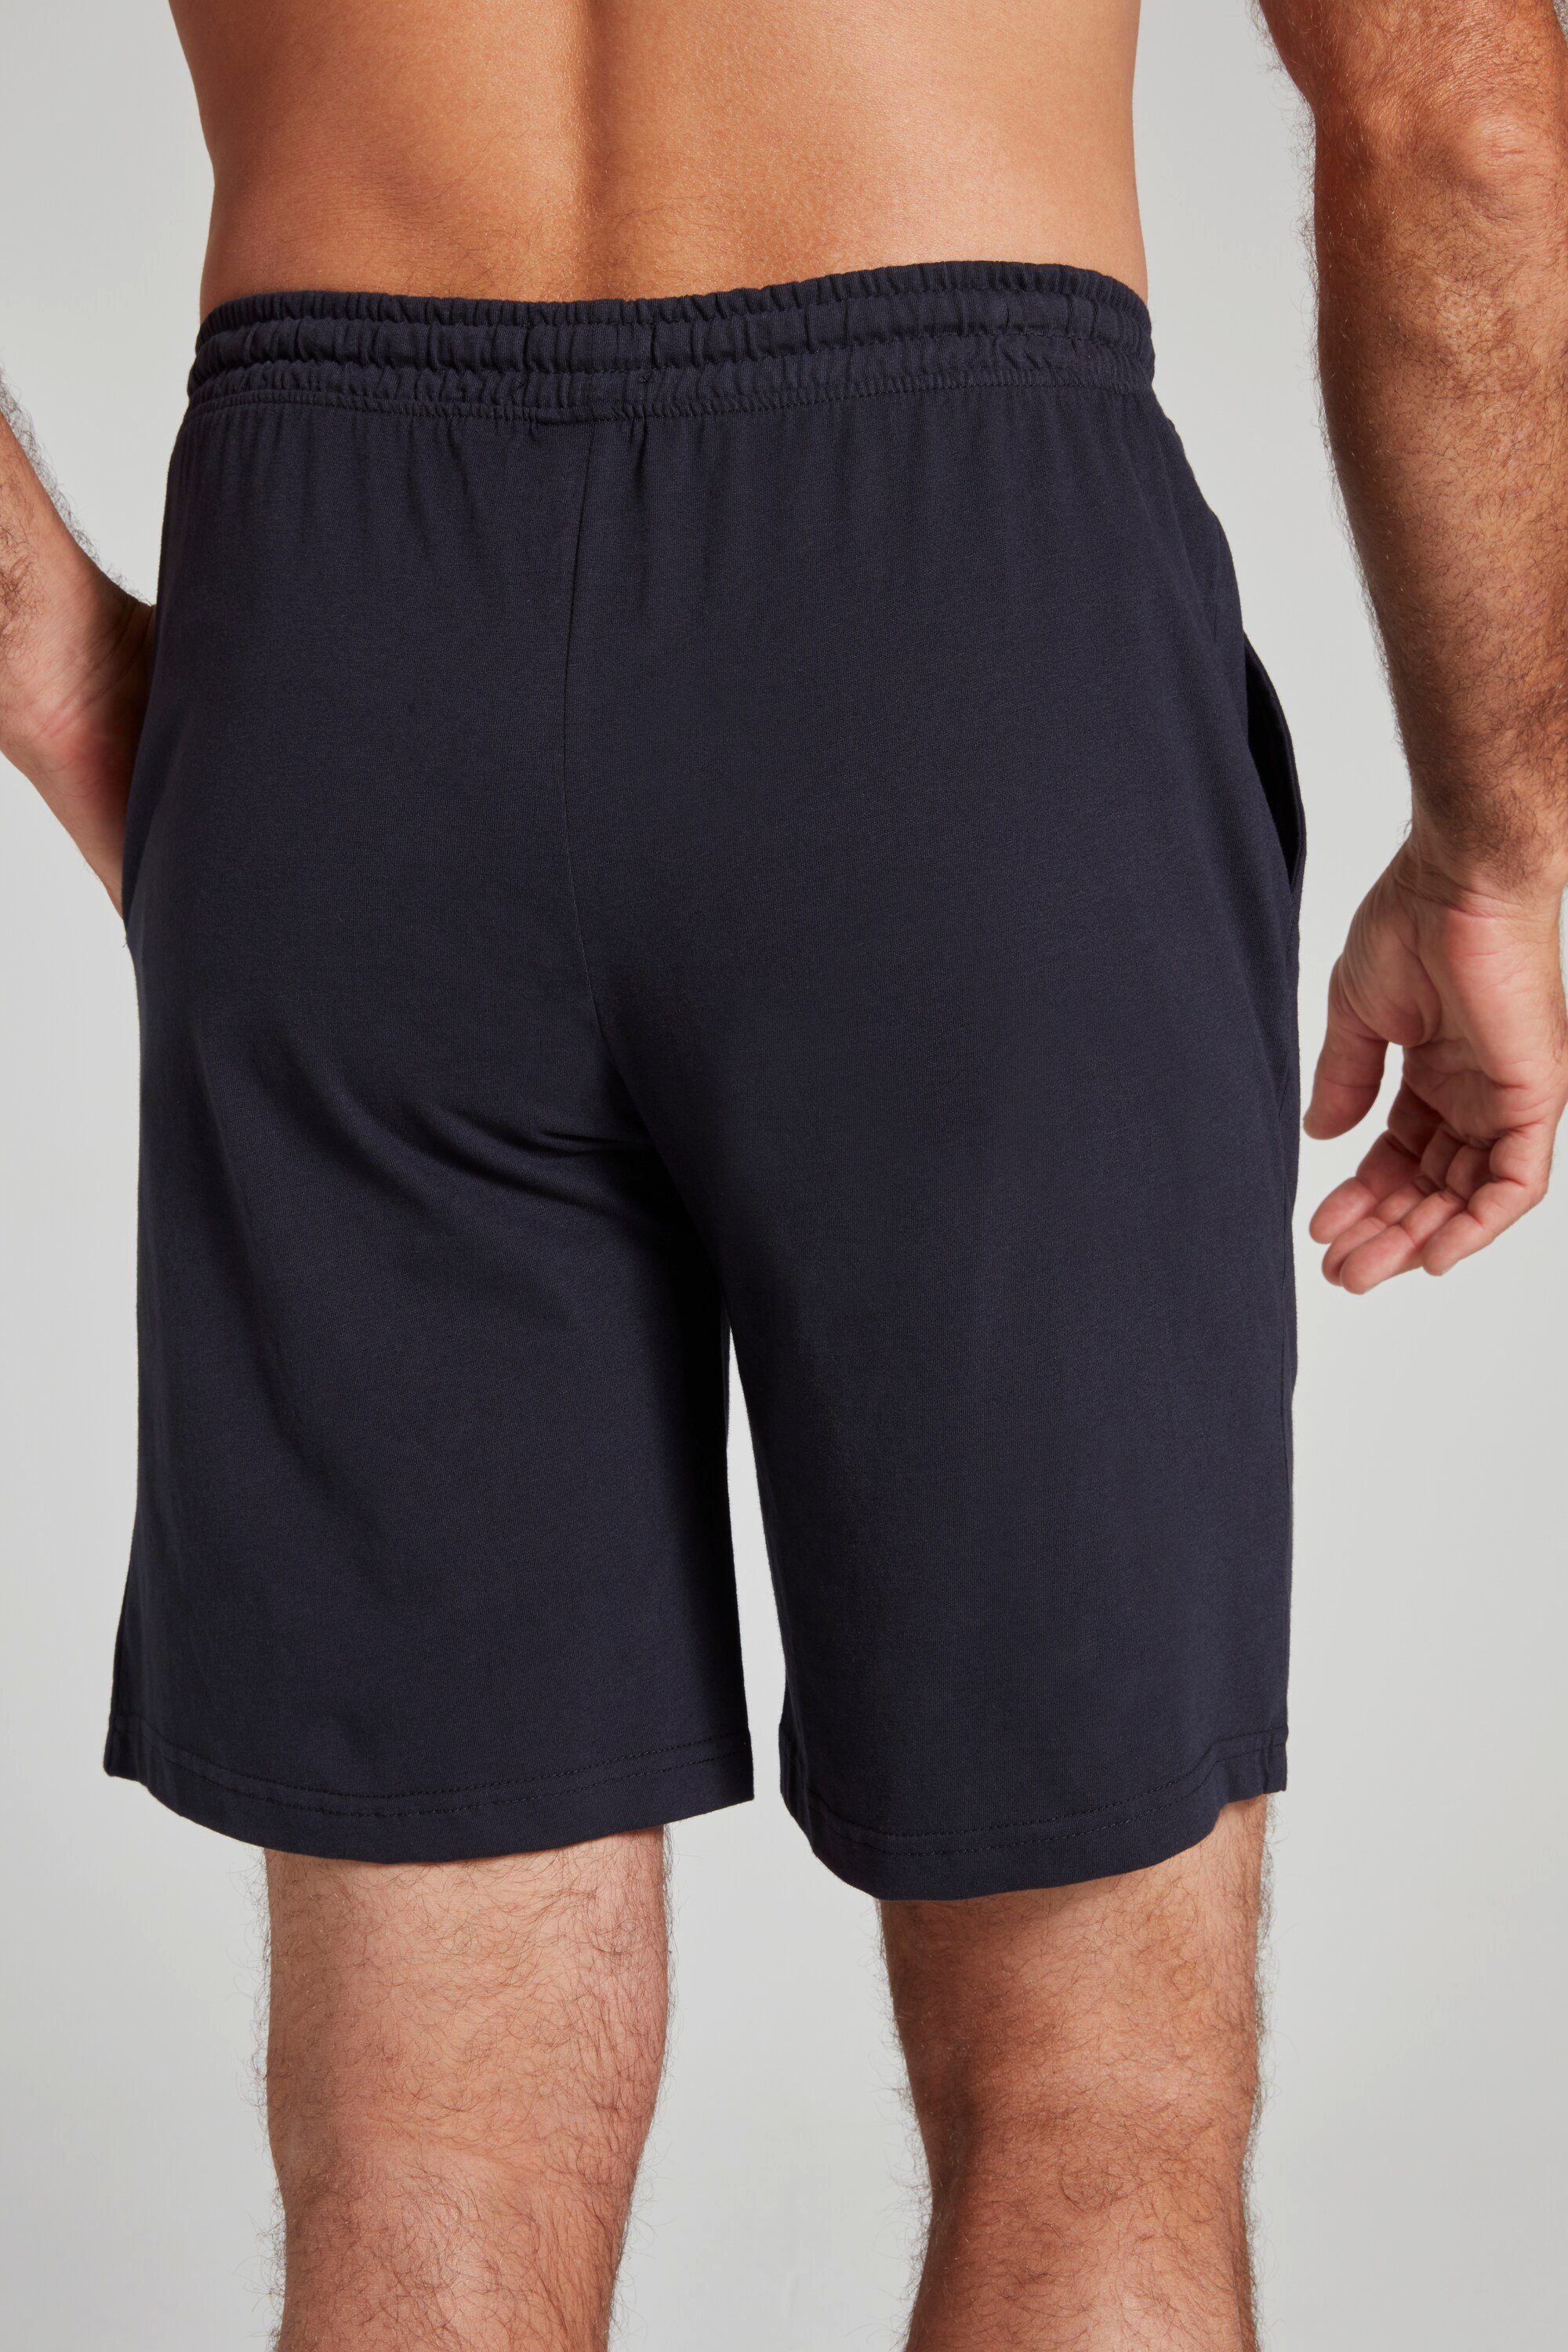 Elastikbund dunkel Schlafanzug Homewear Shorts Schlafanzug marine Hose JP1880